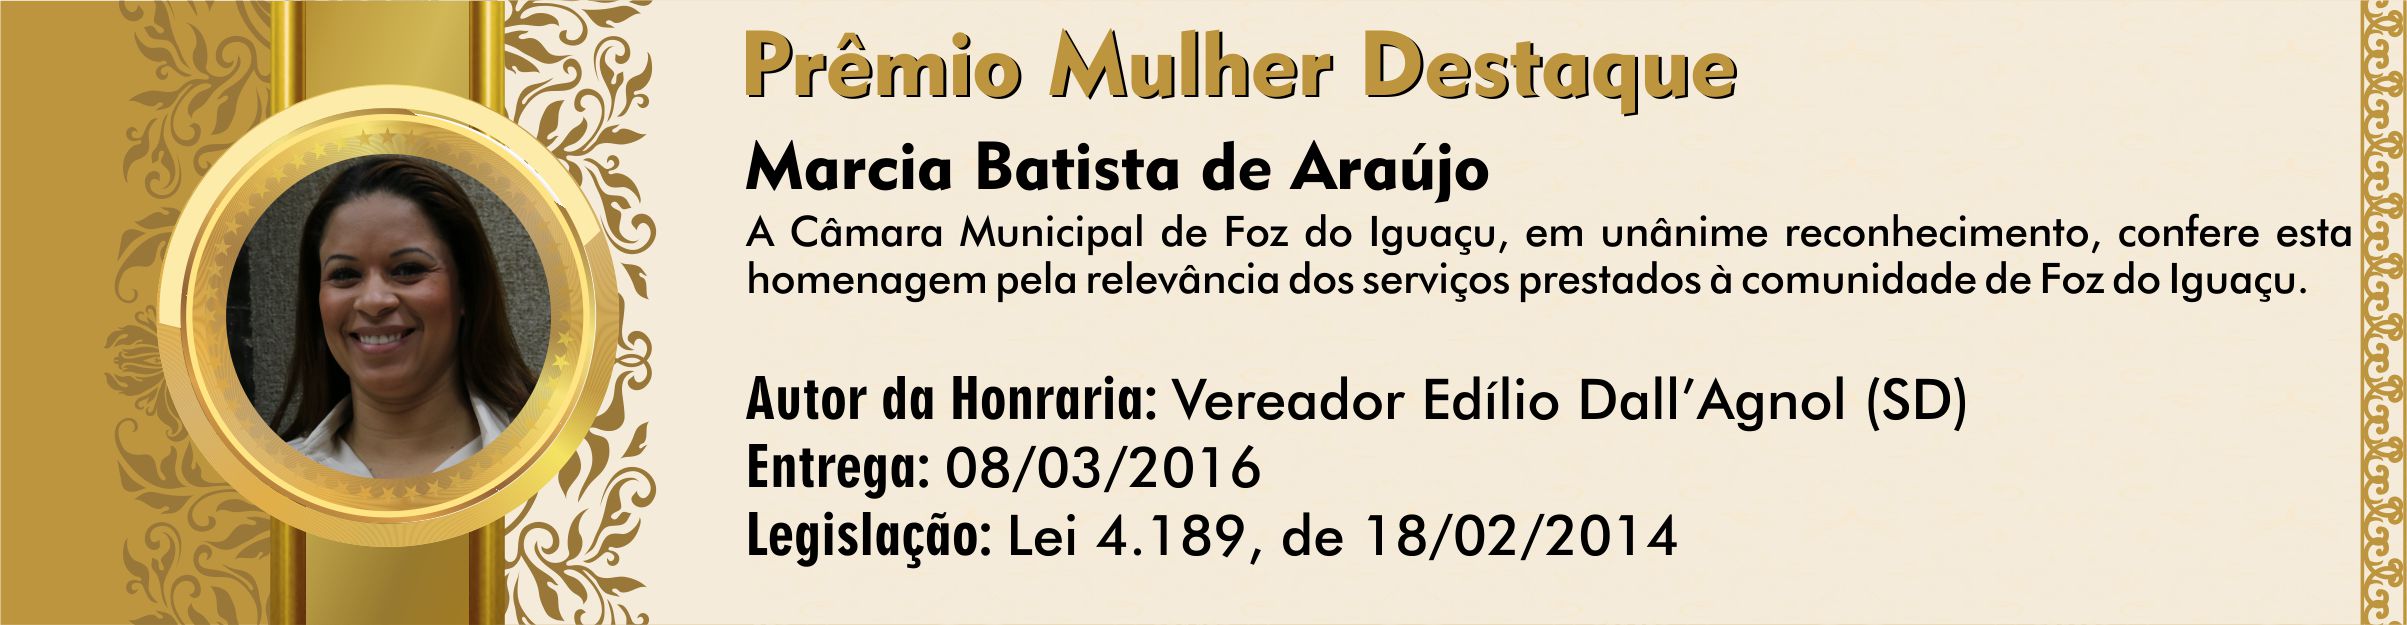 Marcia Batista de Araújo